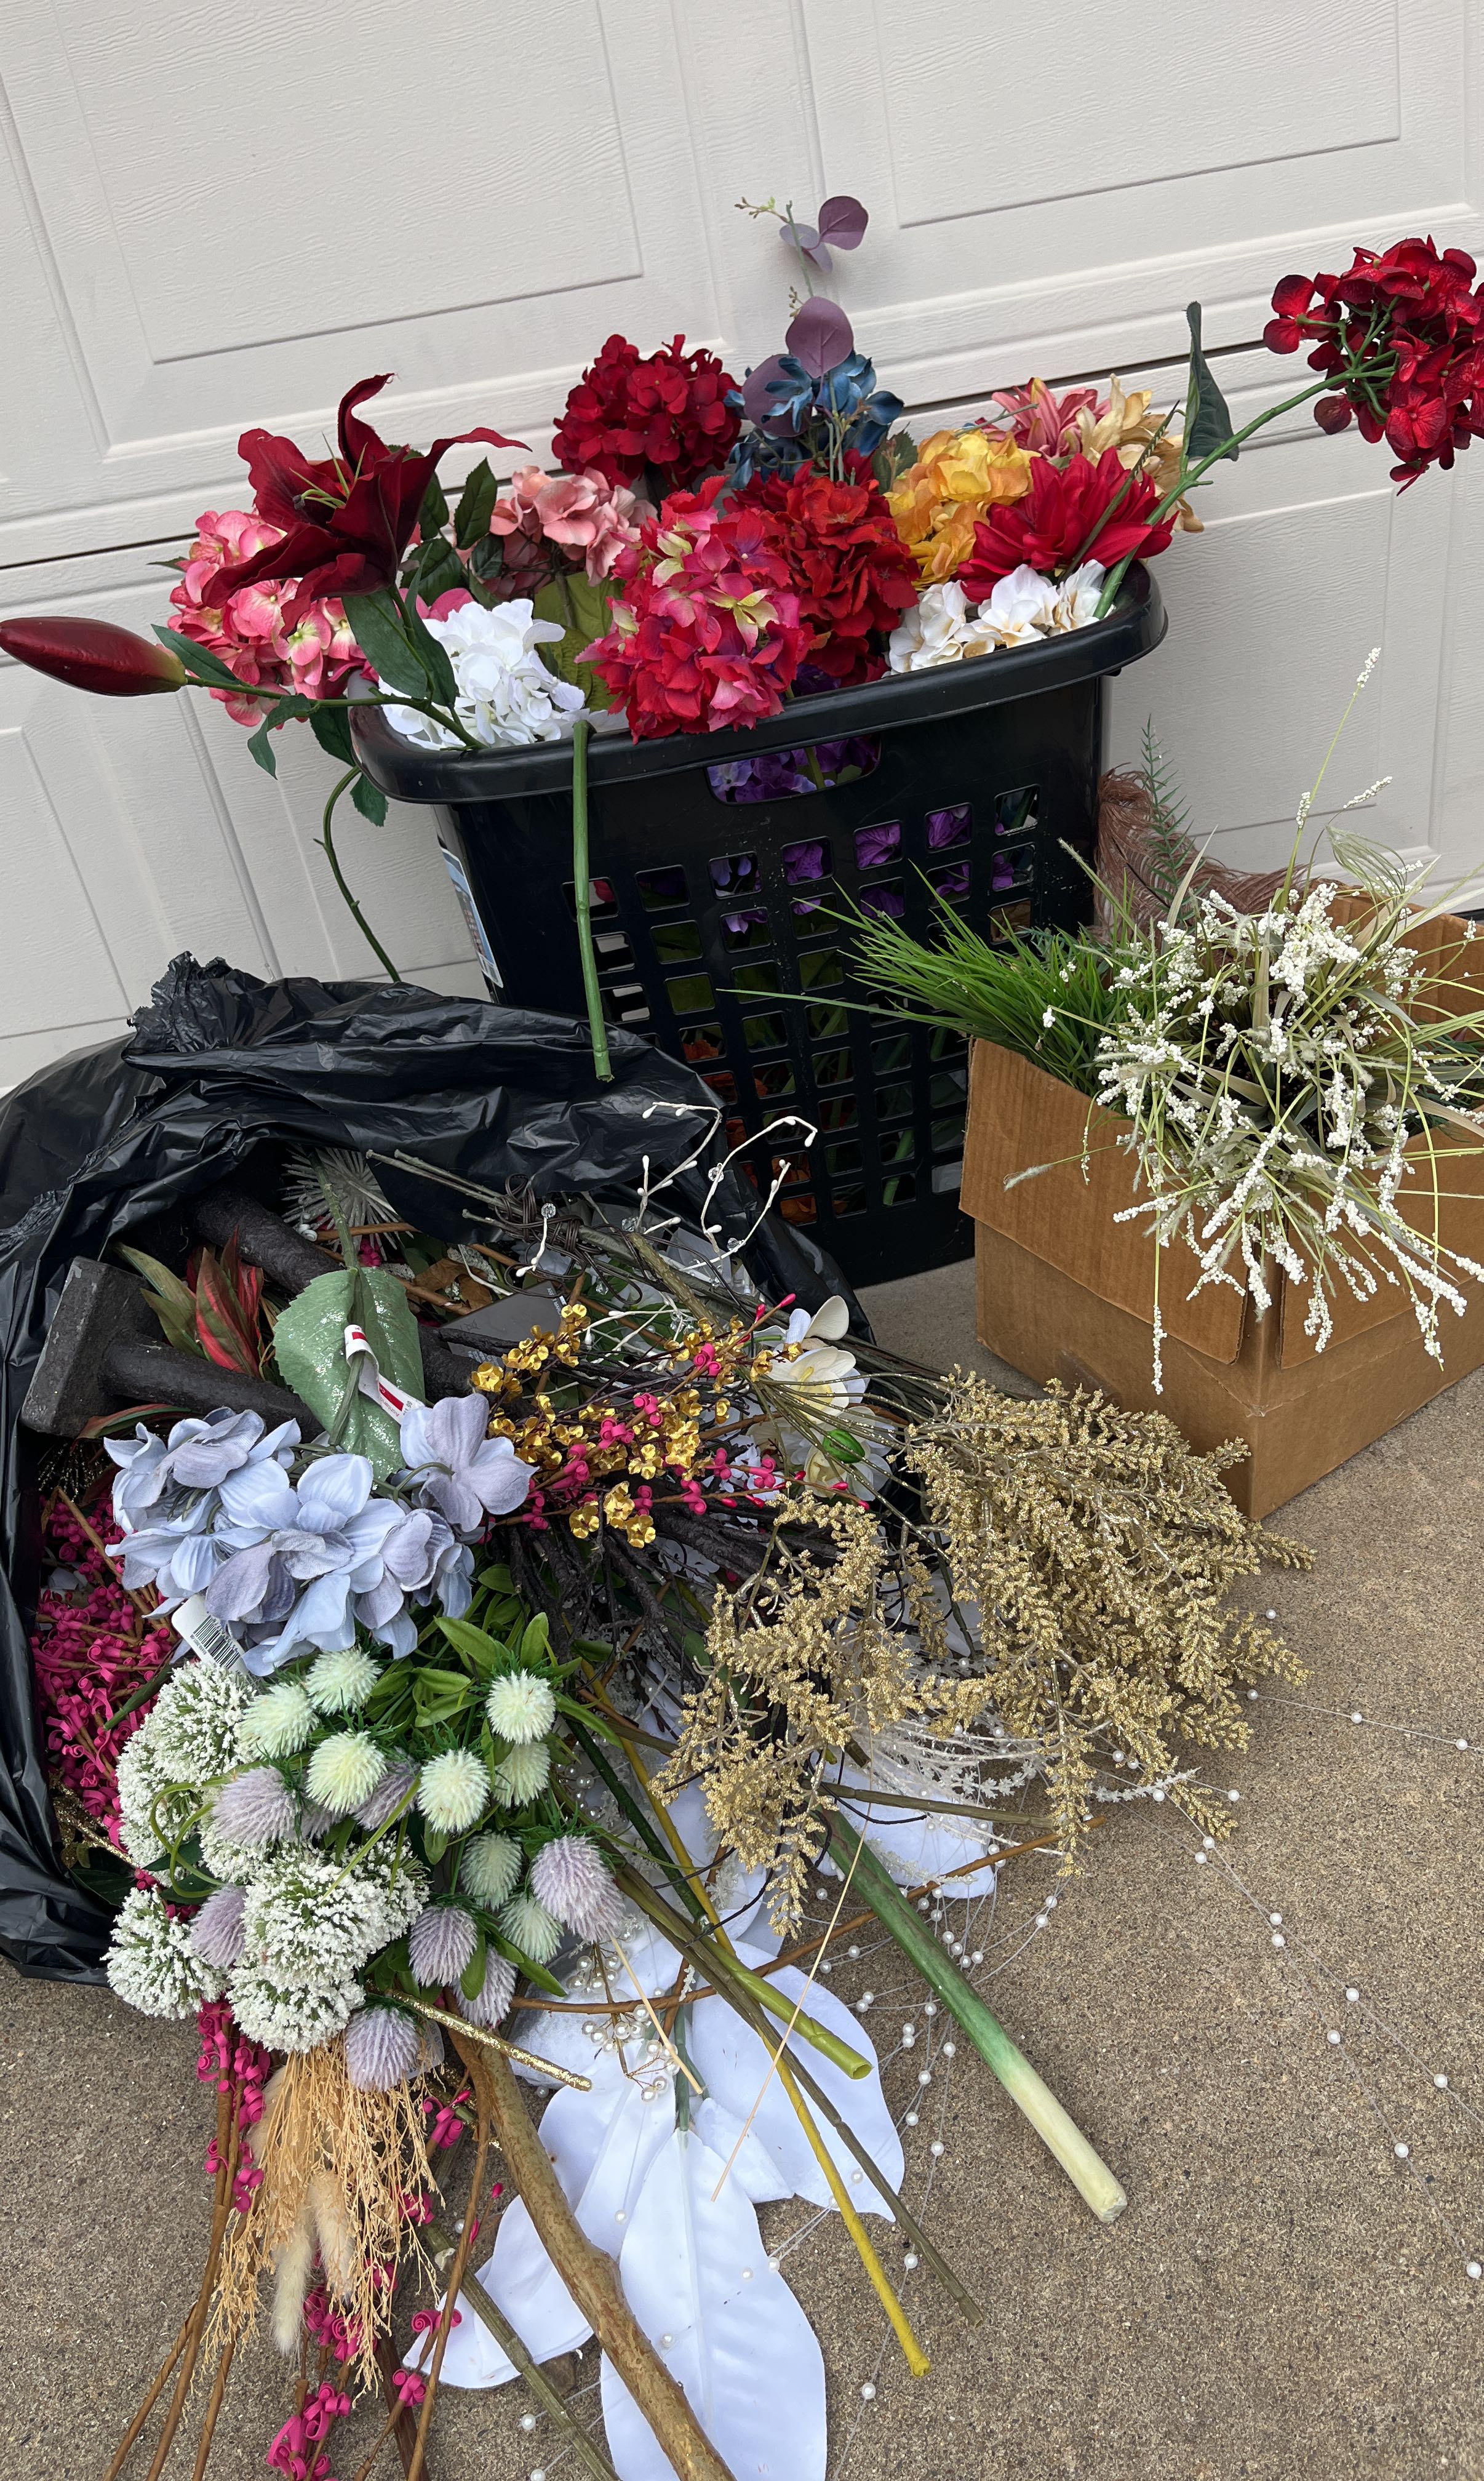 300 Piece Flower Wire, 18 Gauge Floral Stem Wire for Florist Flower  Arrangement, Bouquet Stem Warpping and DIY Craft, White, 16 Inches